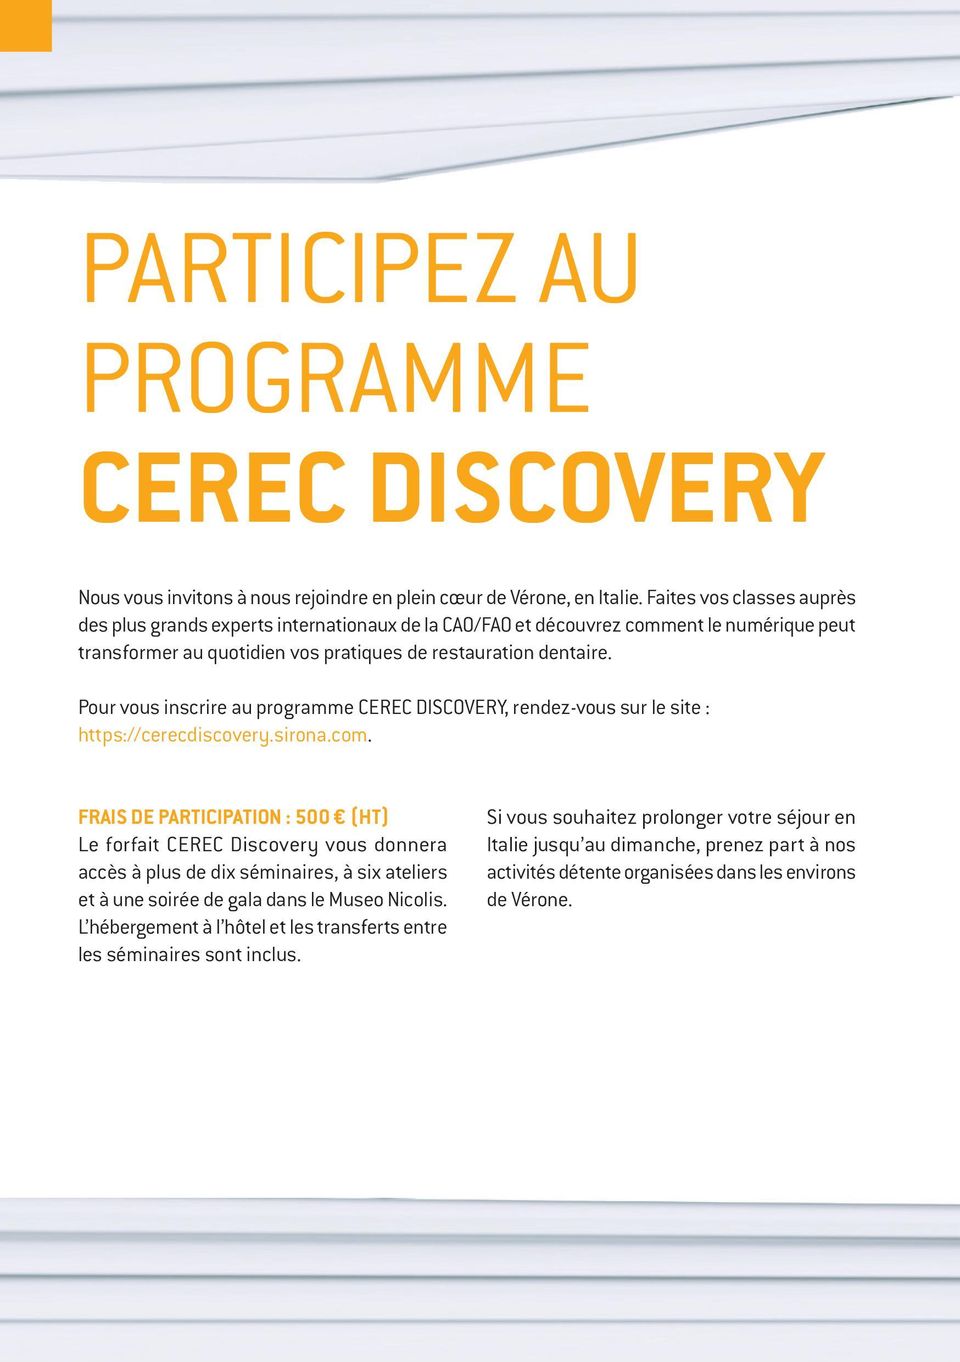 Pour vous inscrire au programme CEREC DISCOVERY, rendez-vous sur le site : https://cerecdiscovery.sirona.com.